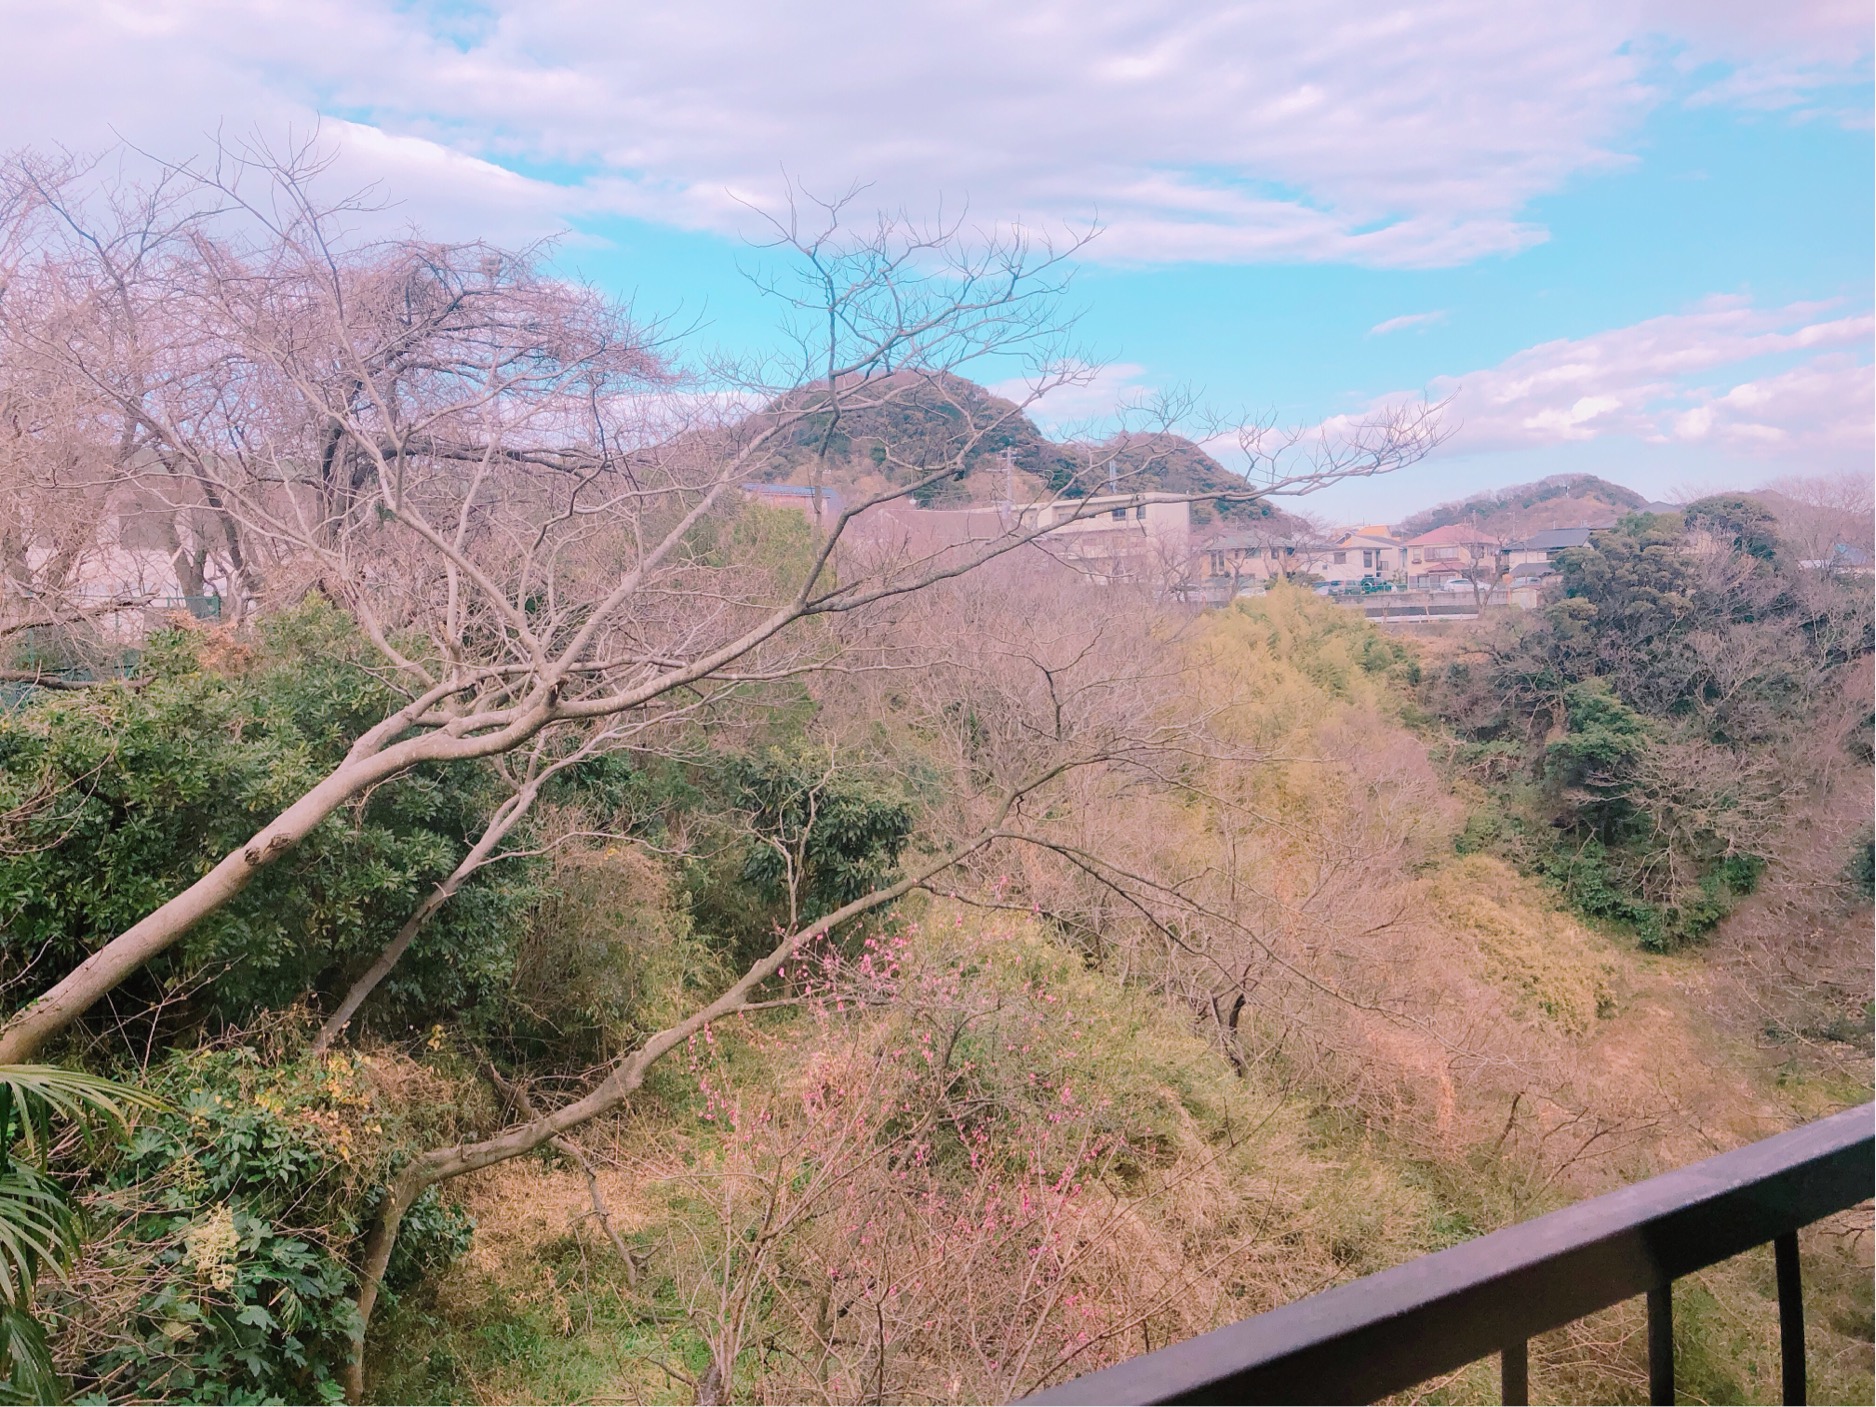 葉山・日の出園から見えた景色。手前に咲く梅と、青空のコントラストが美しい